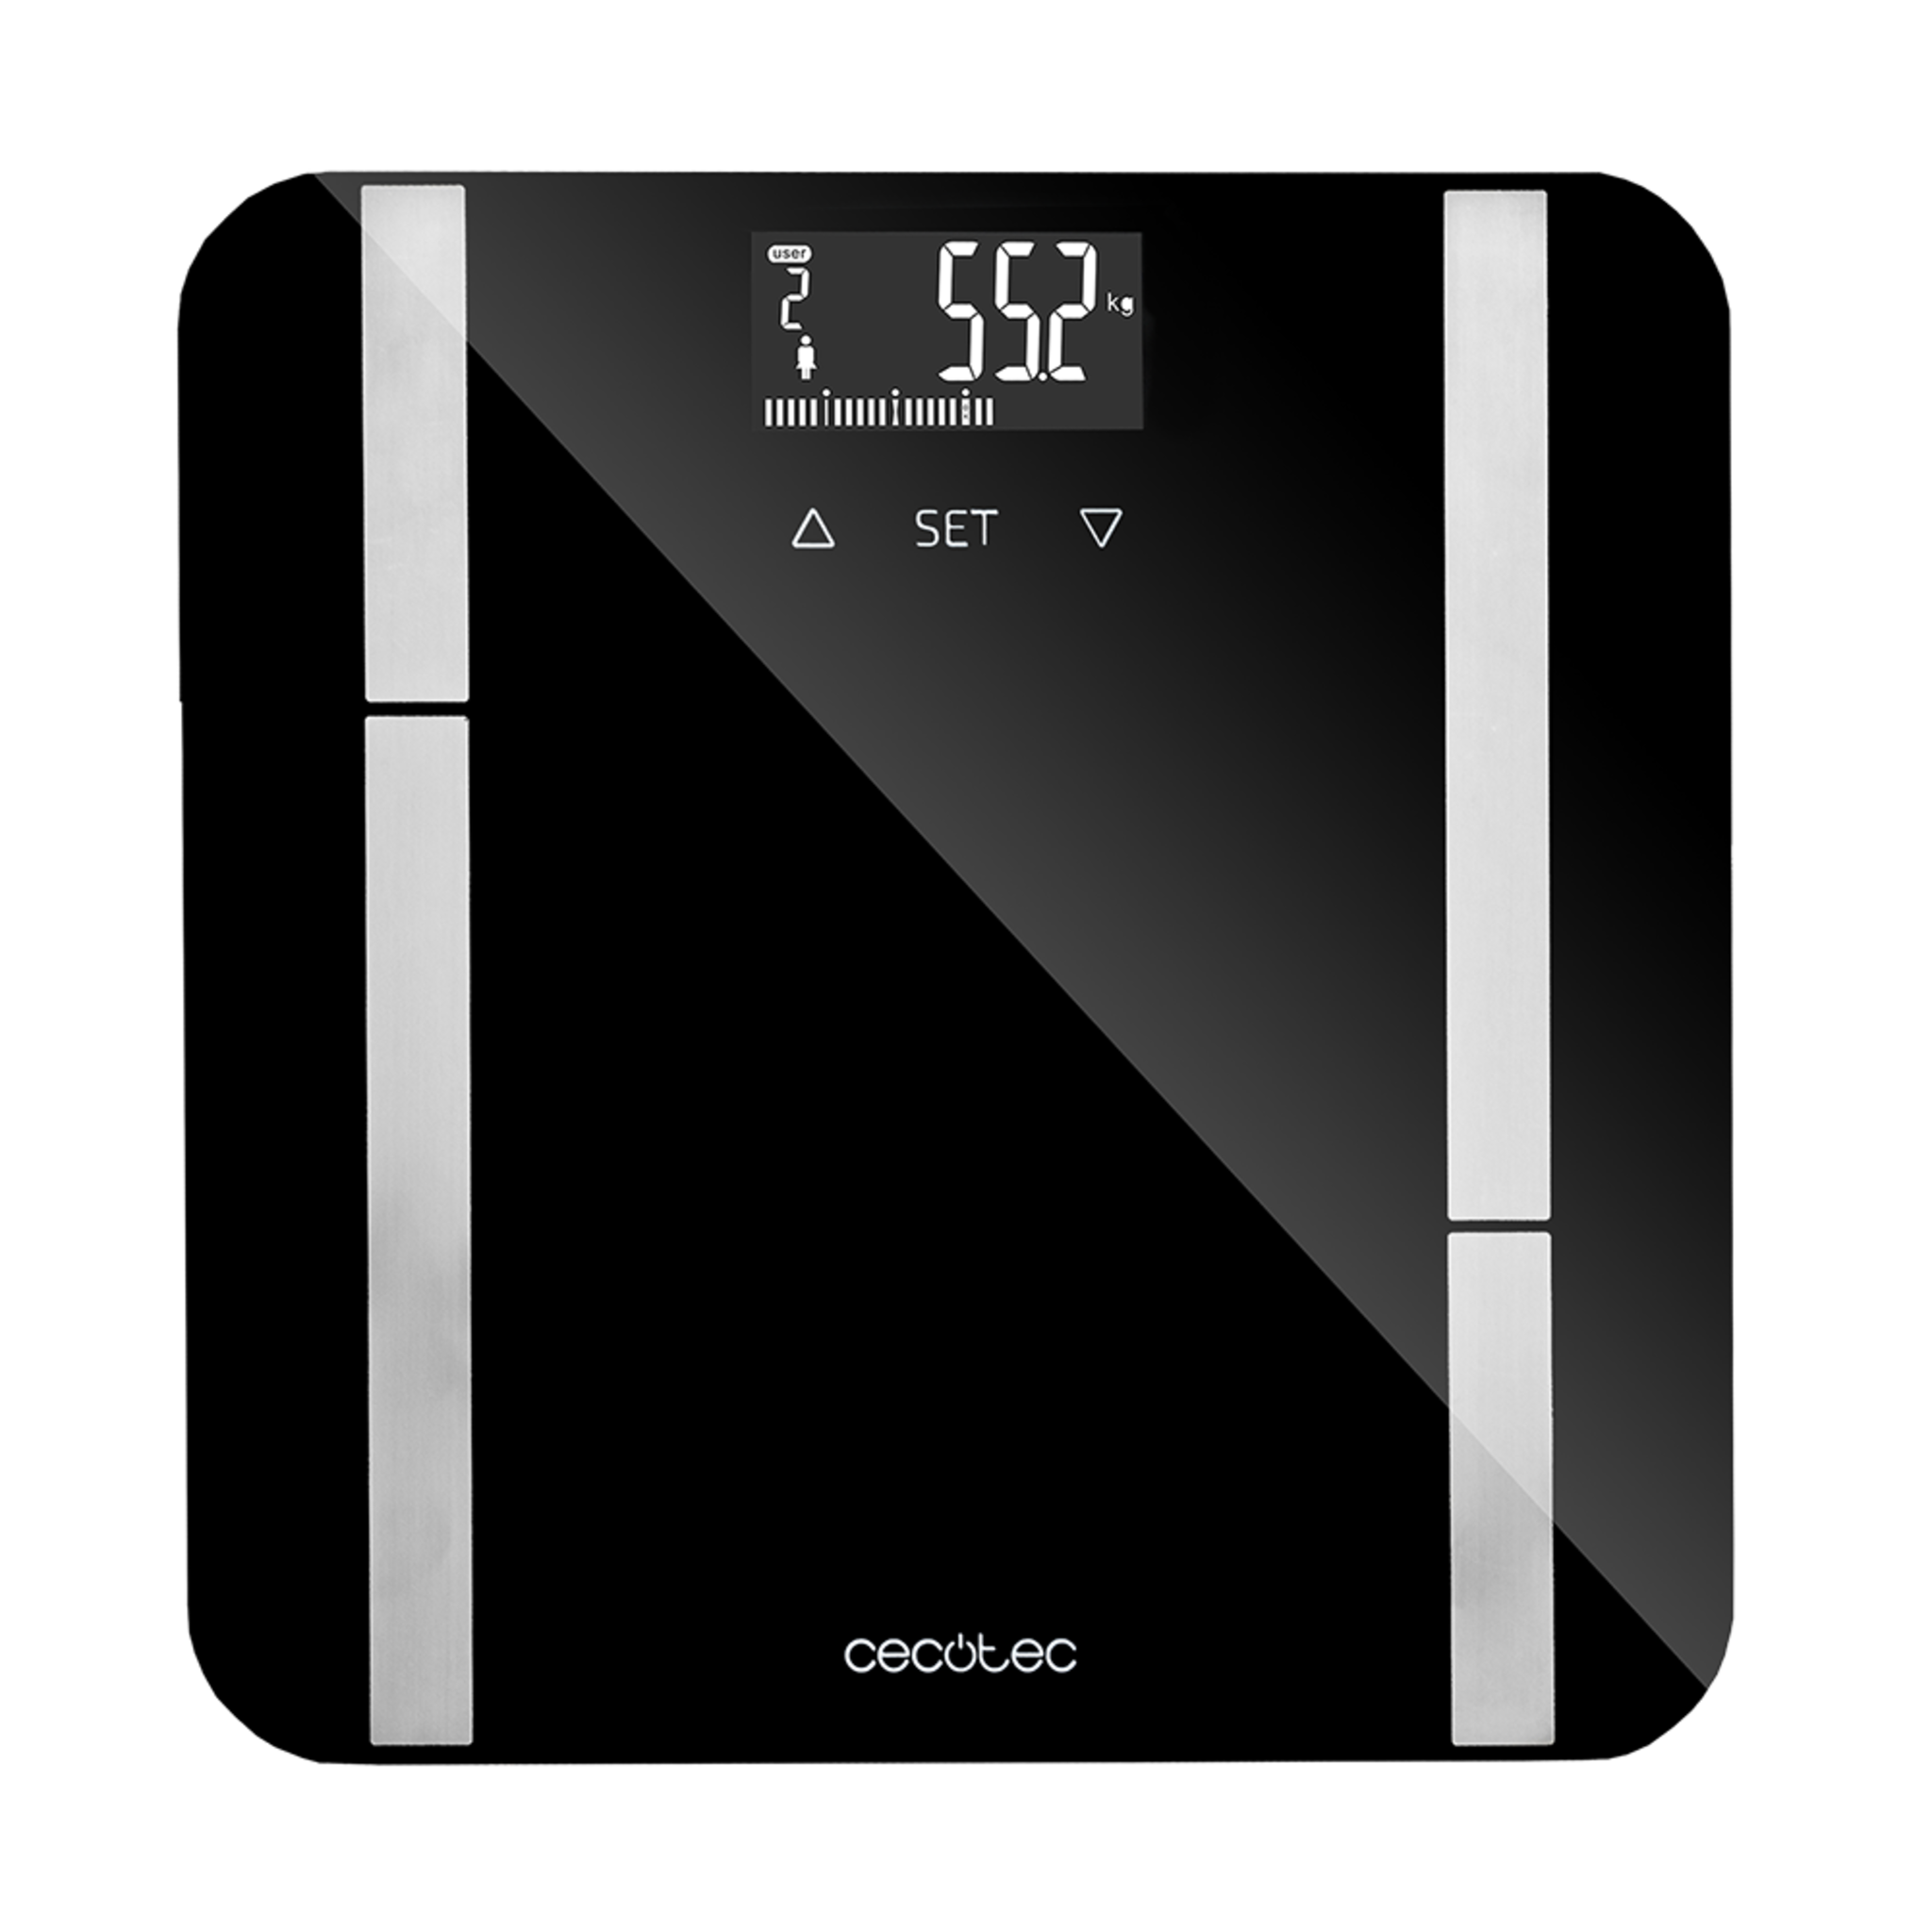 Pèse-personne numérique Surface Precision 9450 Full Healthy. Avec surface en verre trempé de haute sécurité, écran LCD inversé, capacité maximale de 180kg, sans connectivité, noir.